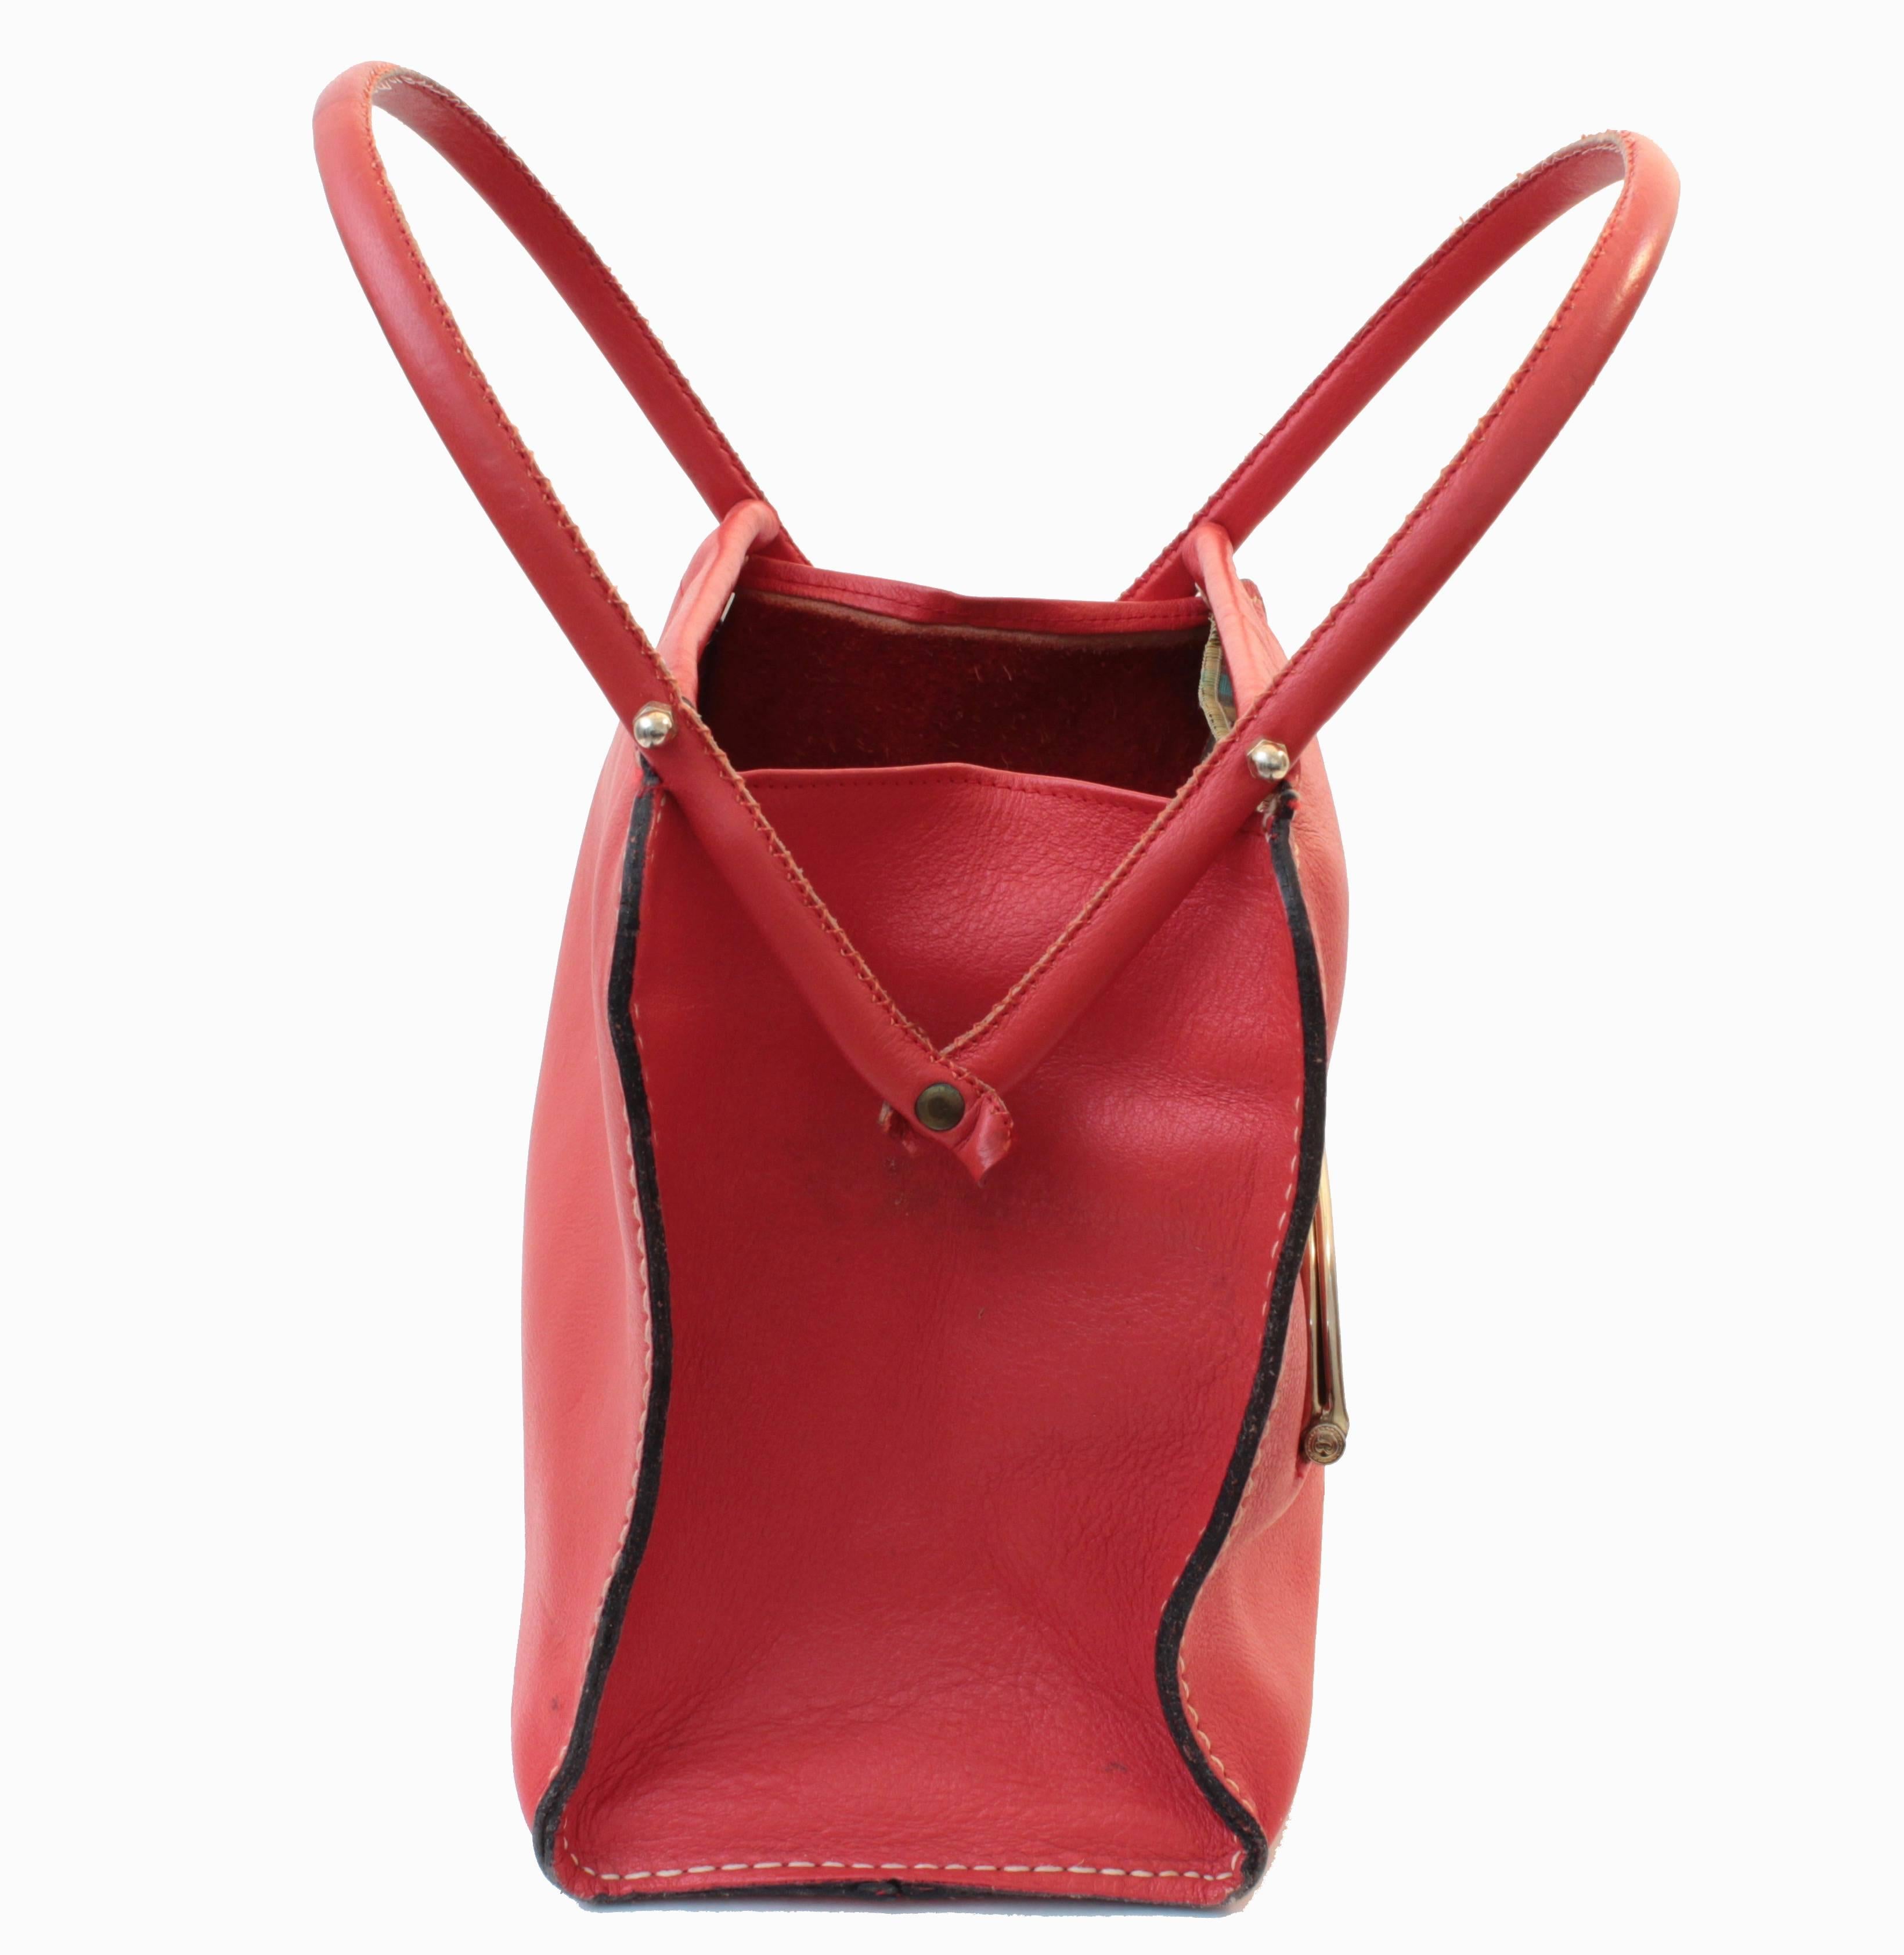 Bonnie Cashin pour Coach - Sac fourre-tout en cuir rouge avec cadre ciseau, sac cabas, 1966 4